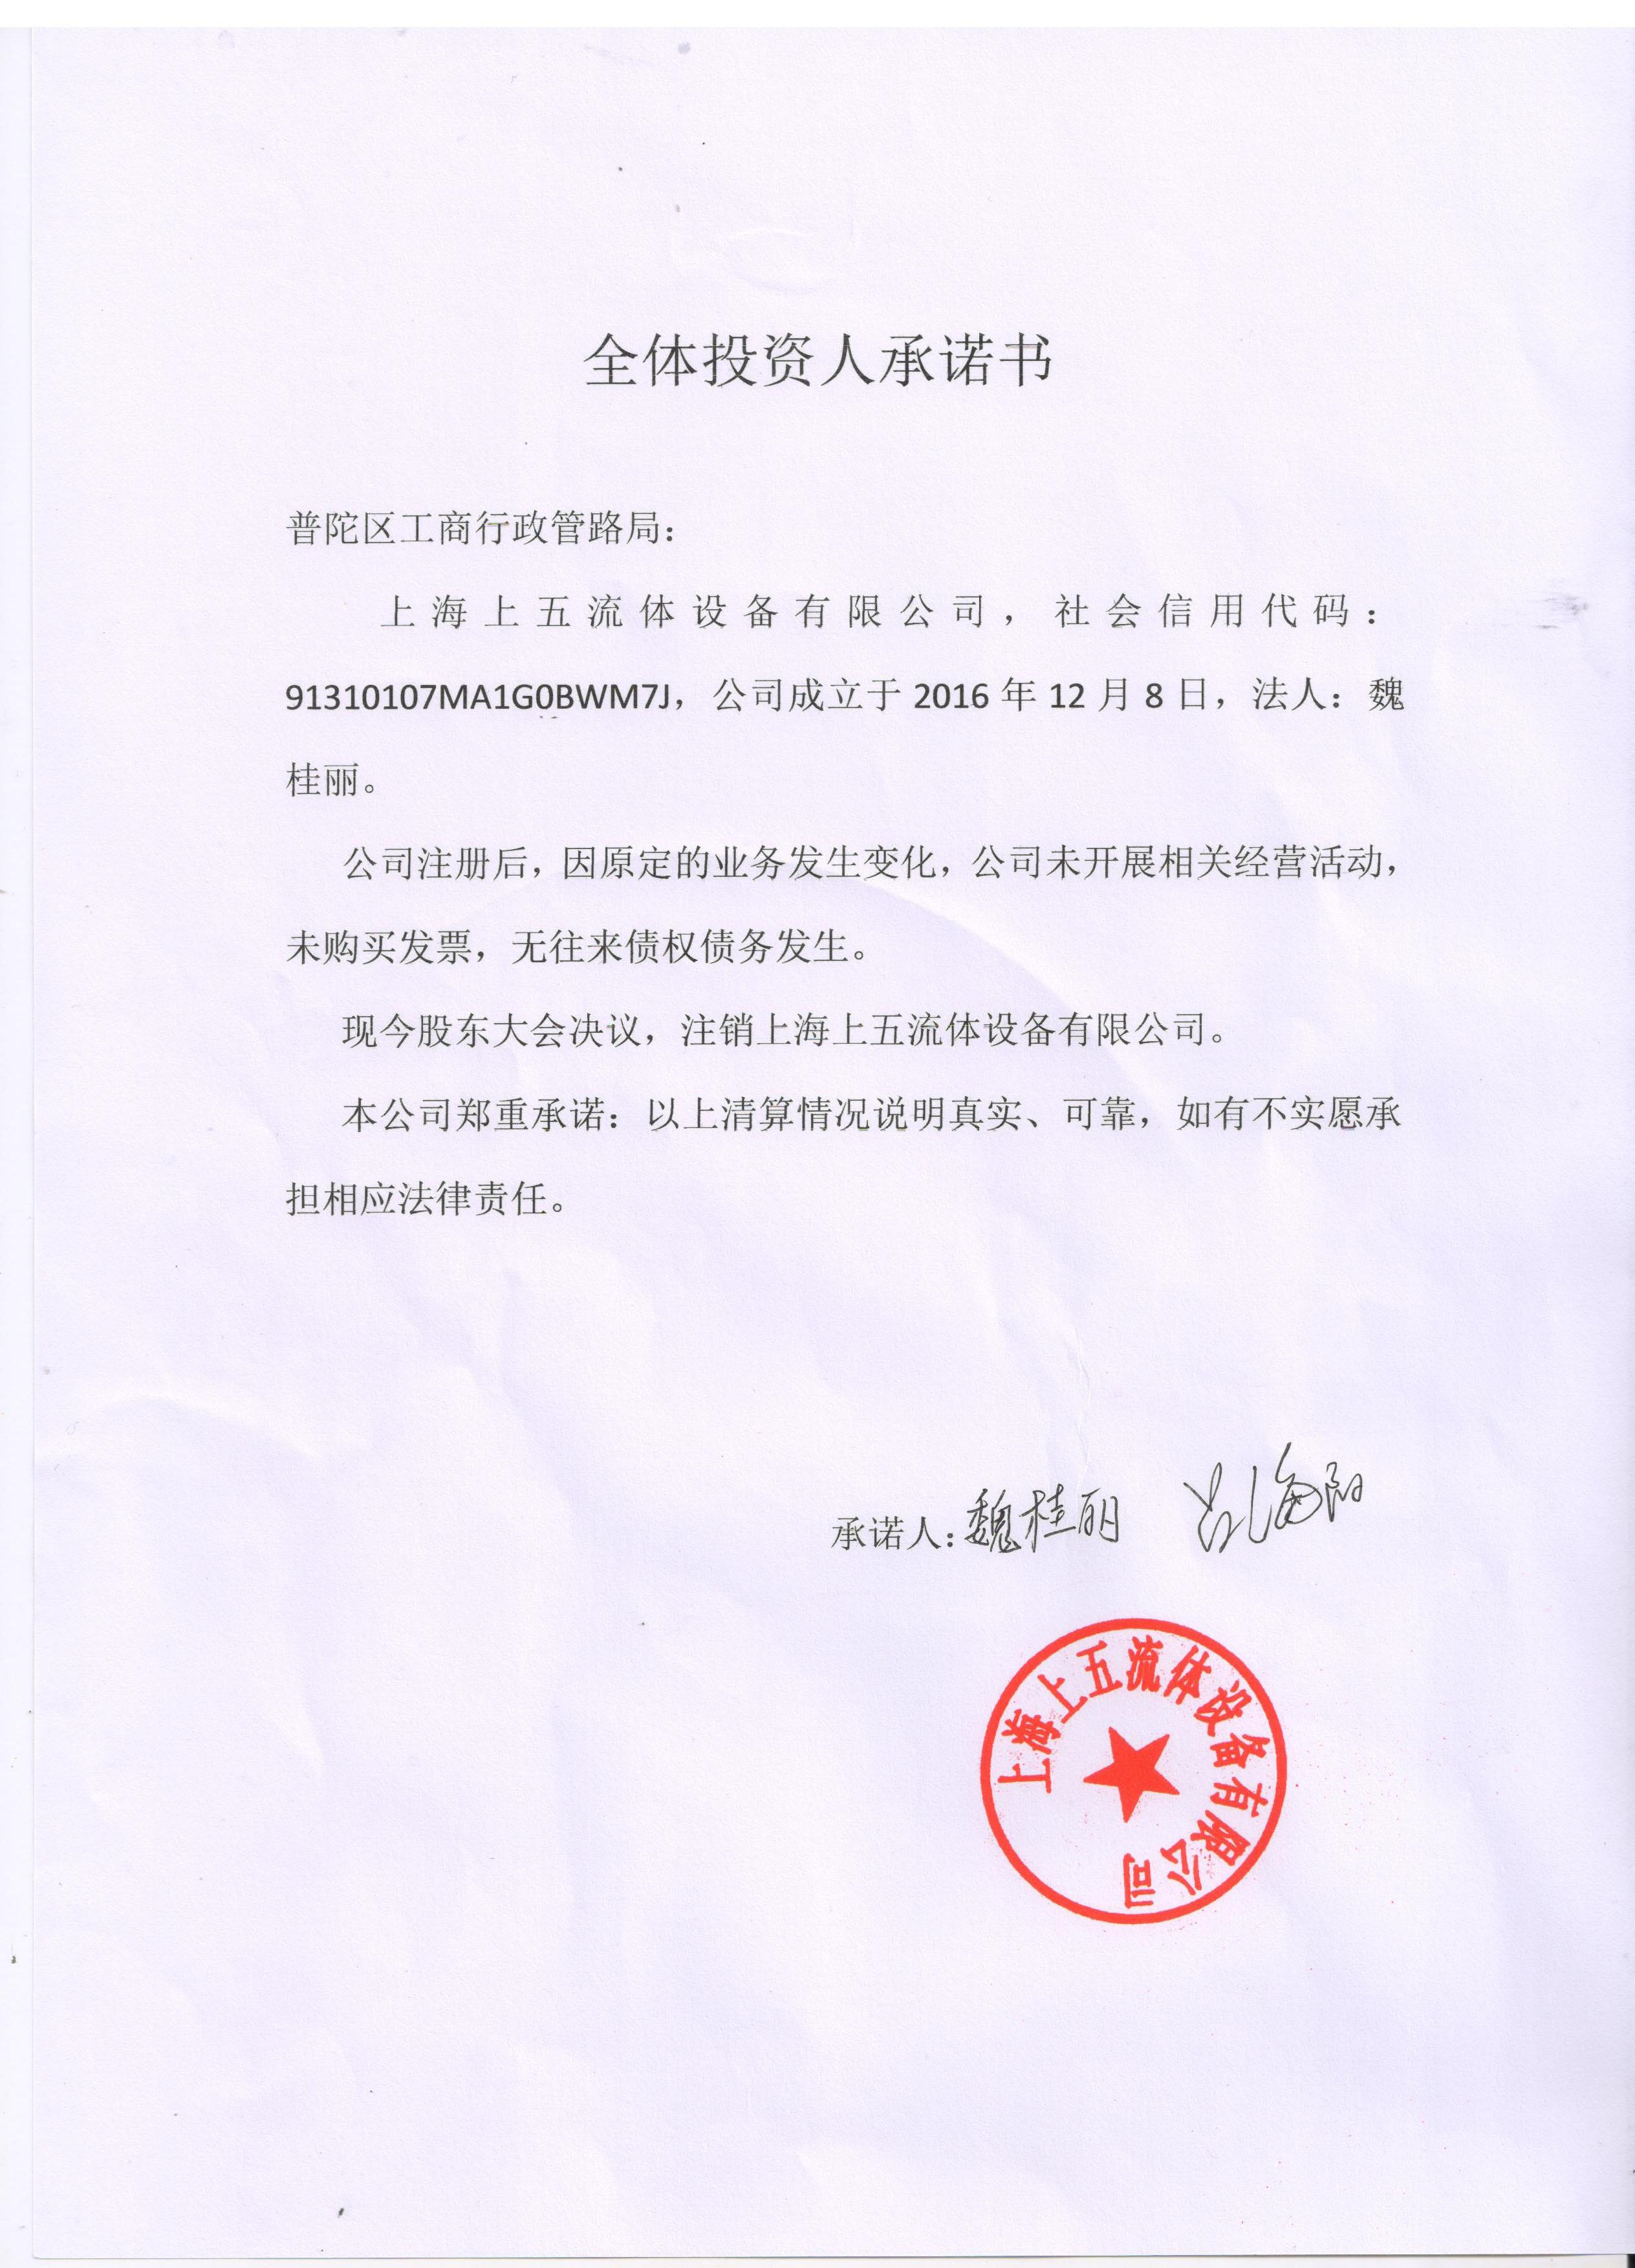 企业公告信息 企业名称 上海上五流体设备有限公司 统一社会信用代码